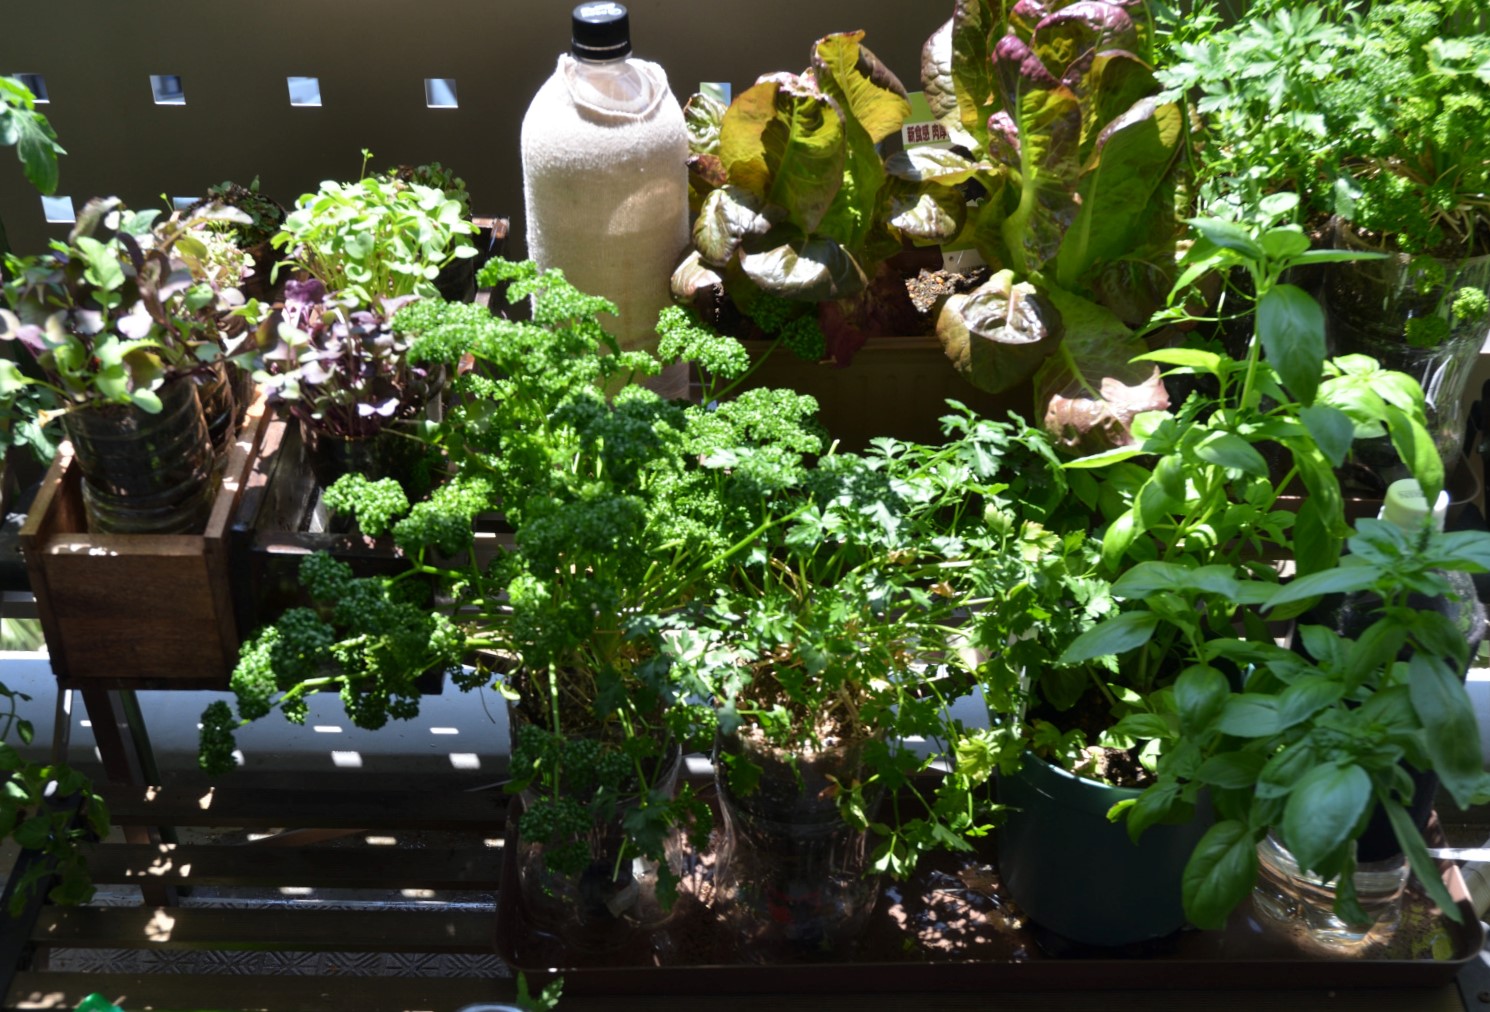 長期間栽培 大きくなるもの Petボトル植木鉢や普通の植木鉢 プランターへの植え替え植え直し 根の過度の集中に関する留意点 緑水学舎